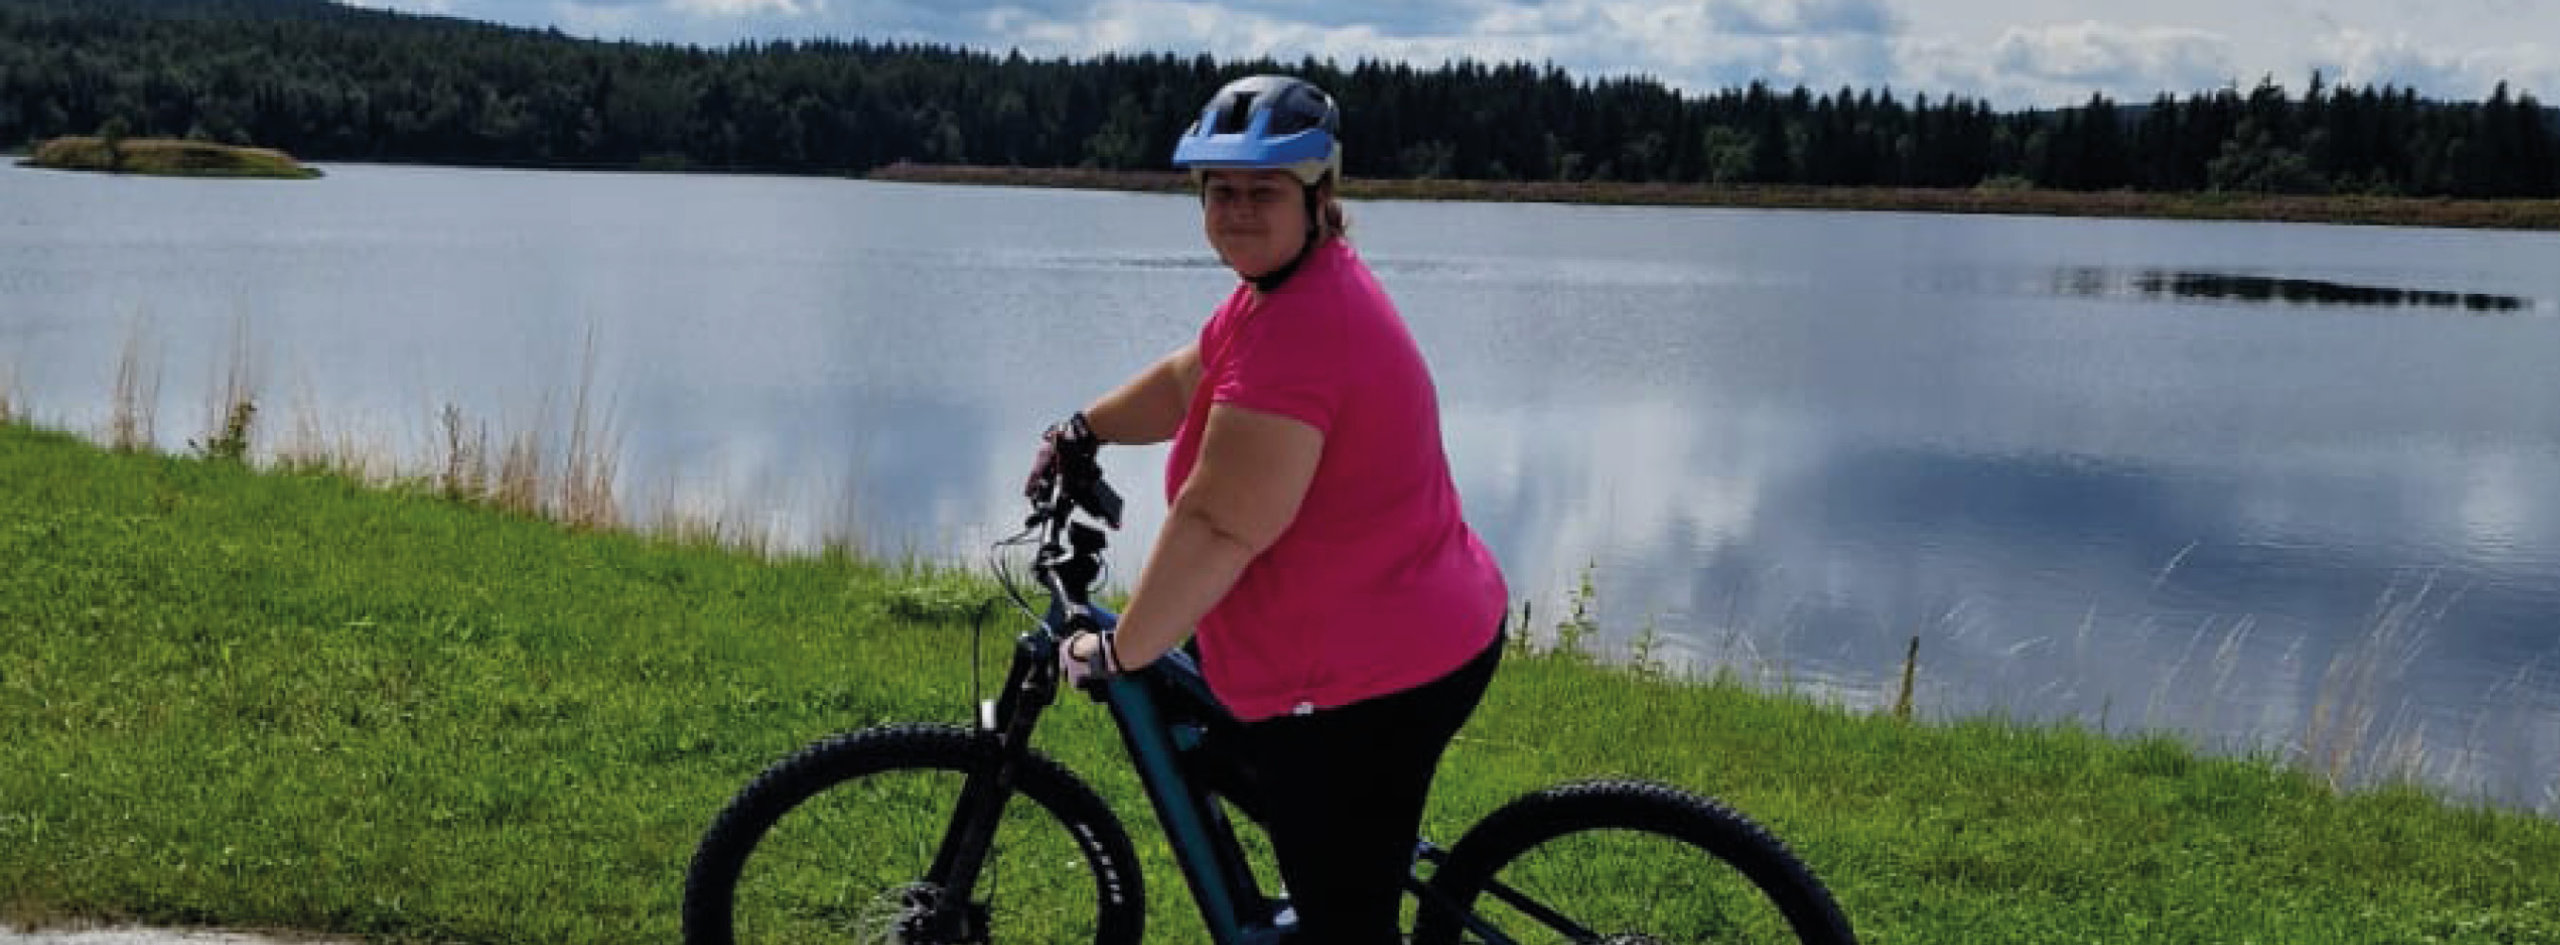 Eine Frau mit pinkem Shirt und blauem Helm steht mit ihrem E-Bike vor einem See und lächelt in die Kamera